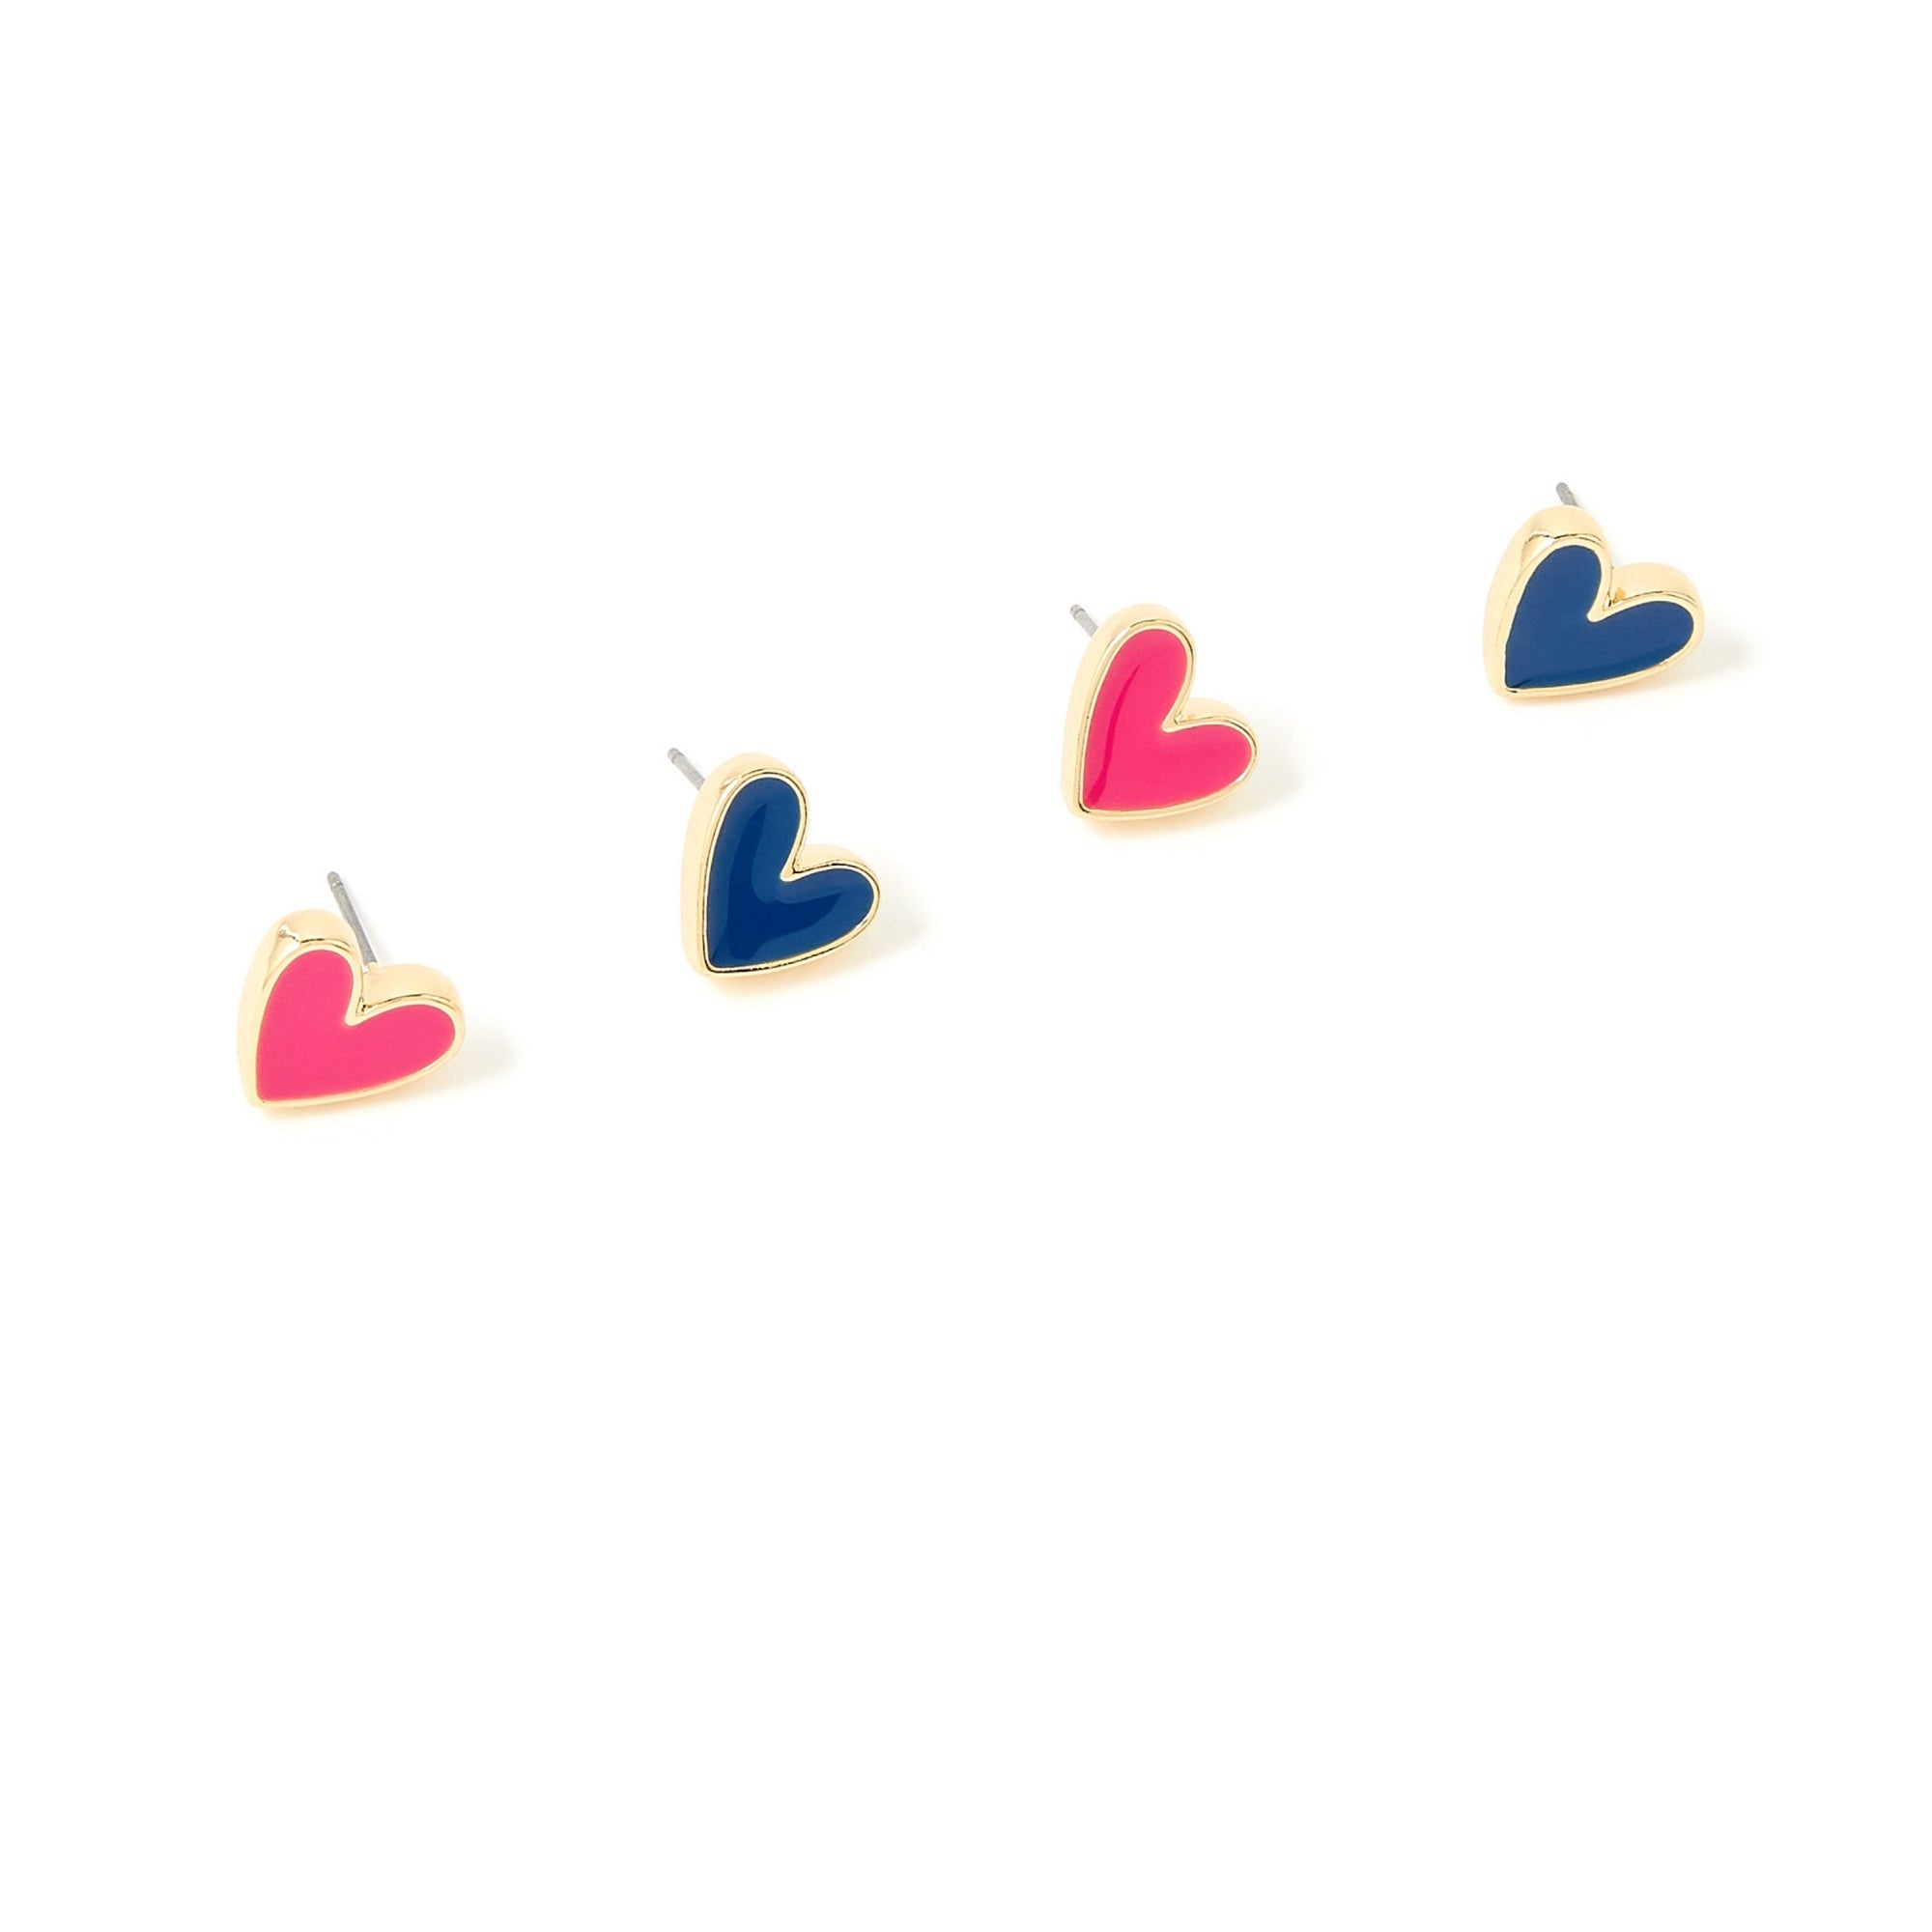 Accessorize London Women's Pink & Blue Feel Good Set of 2 Heart Enamel Studs Earring Pack